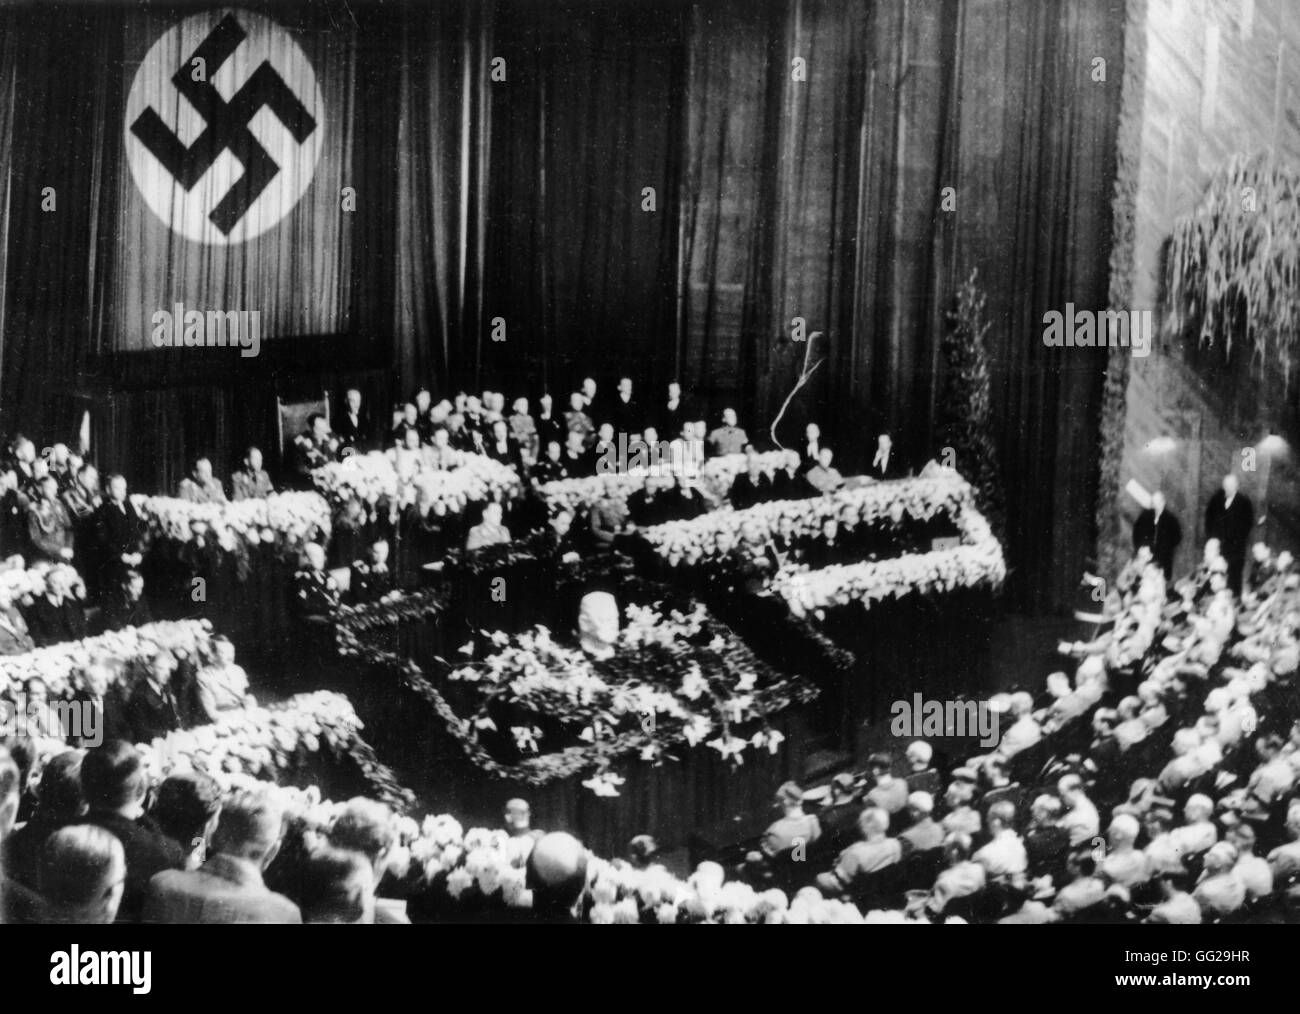 Séance du Reichstag, Hitler offrant une oraison funèbre pour août Hindenburg 5/6, 1934 Allemagne Paris. Bibliothèque nationale Banque D'Images